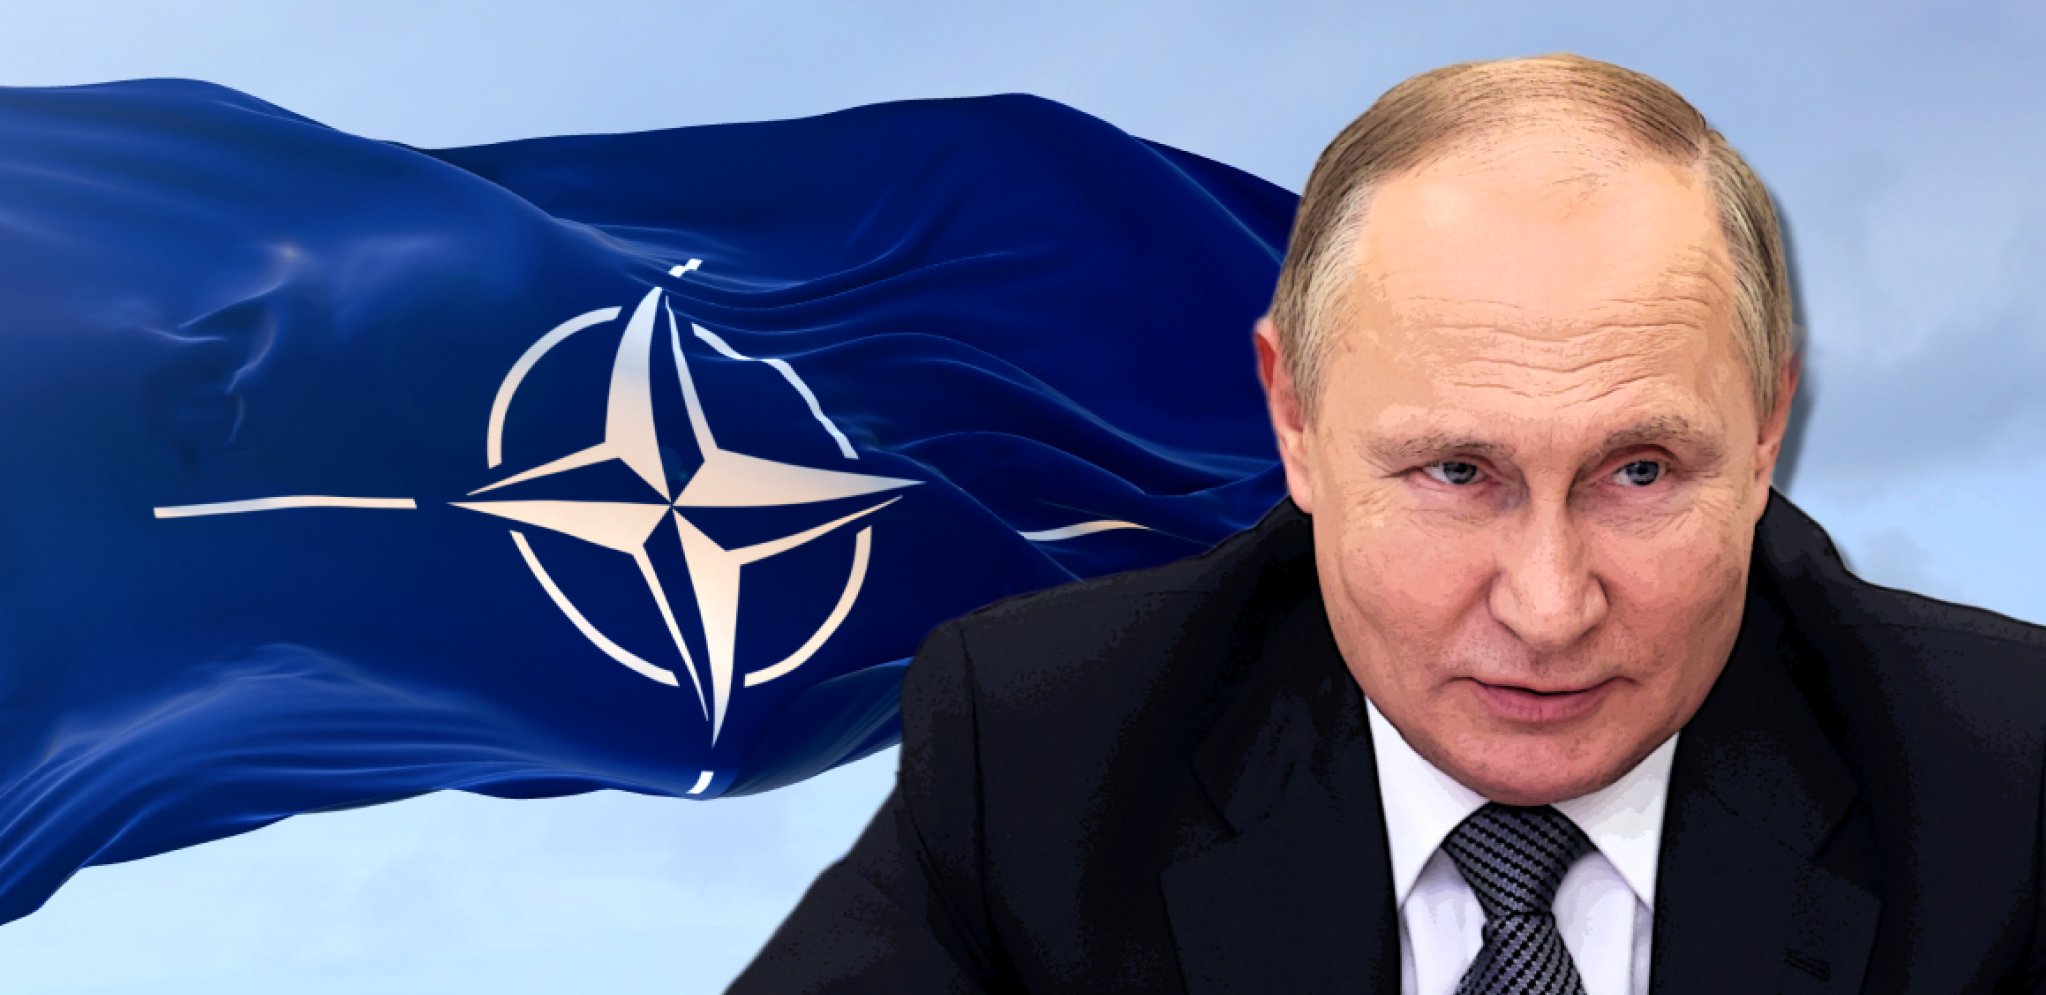 KO POMAŽE, A KO ODMAŽE PUTINU? Raskol među NATO članicama "dostiže vrhunac"